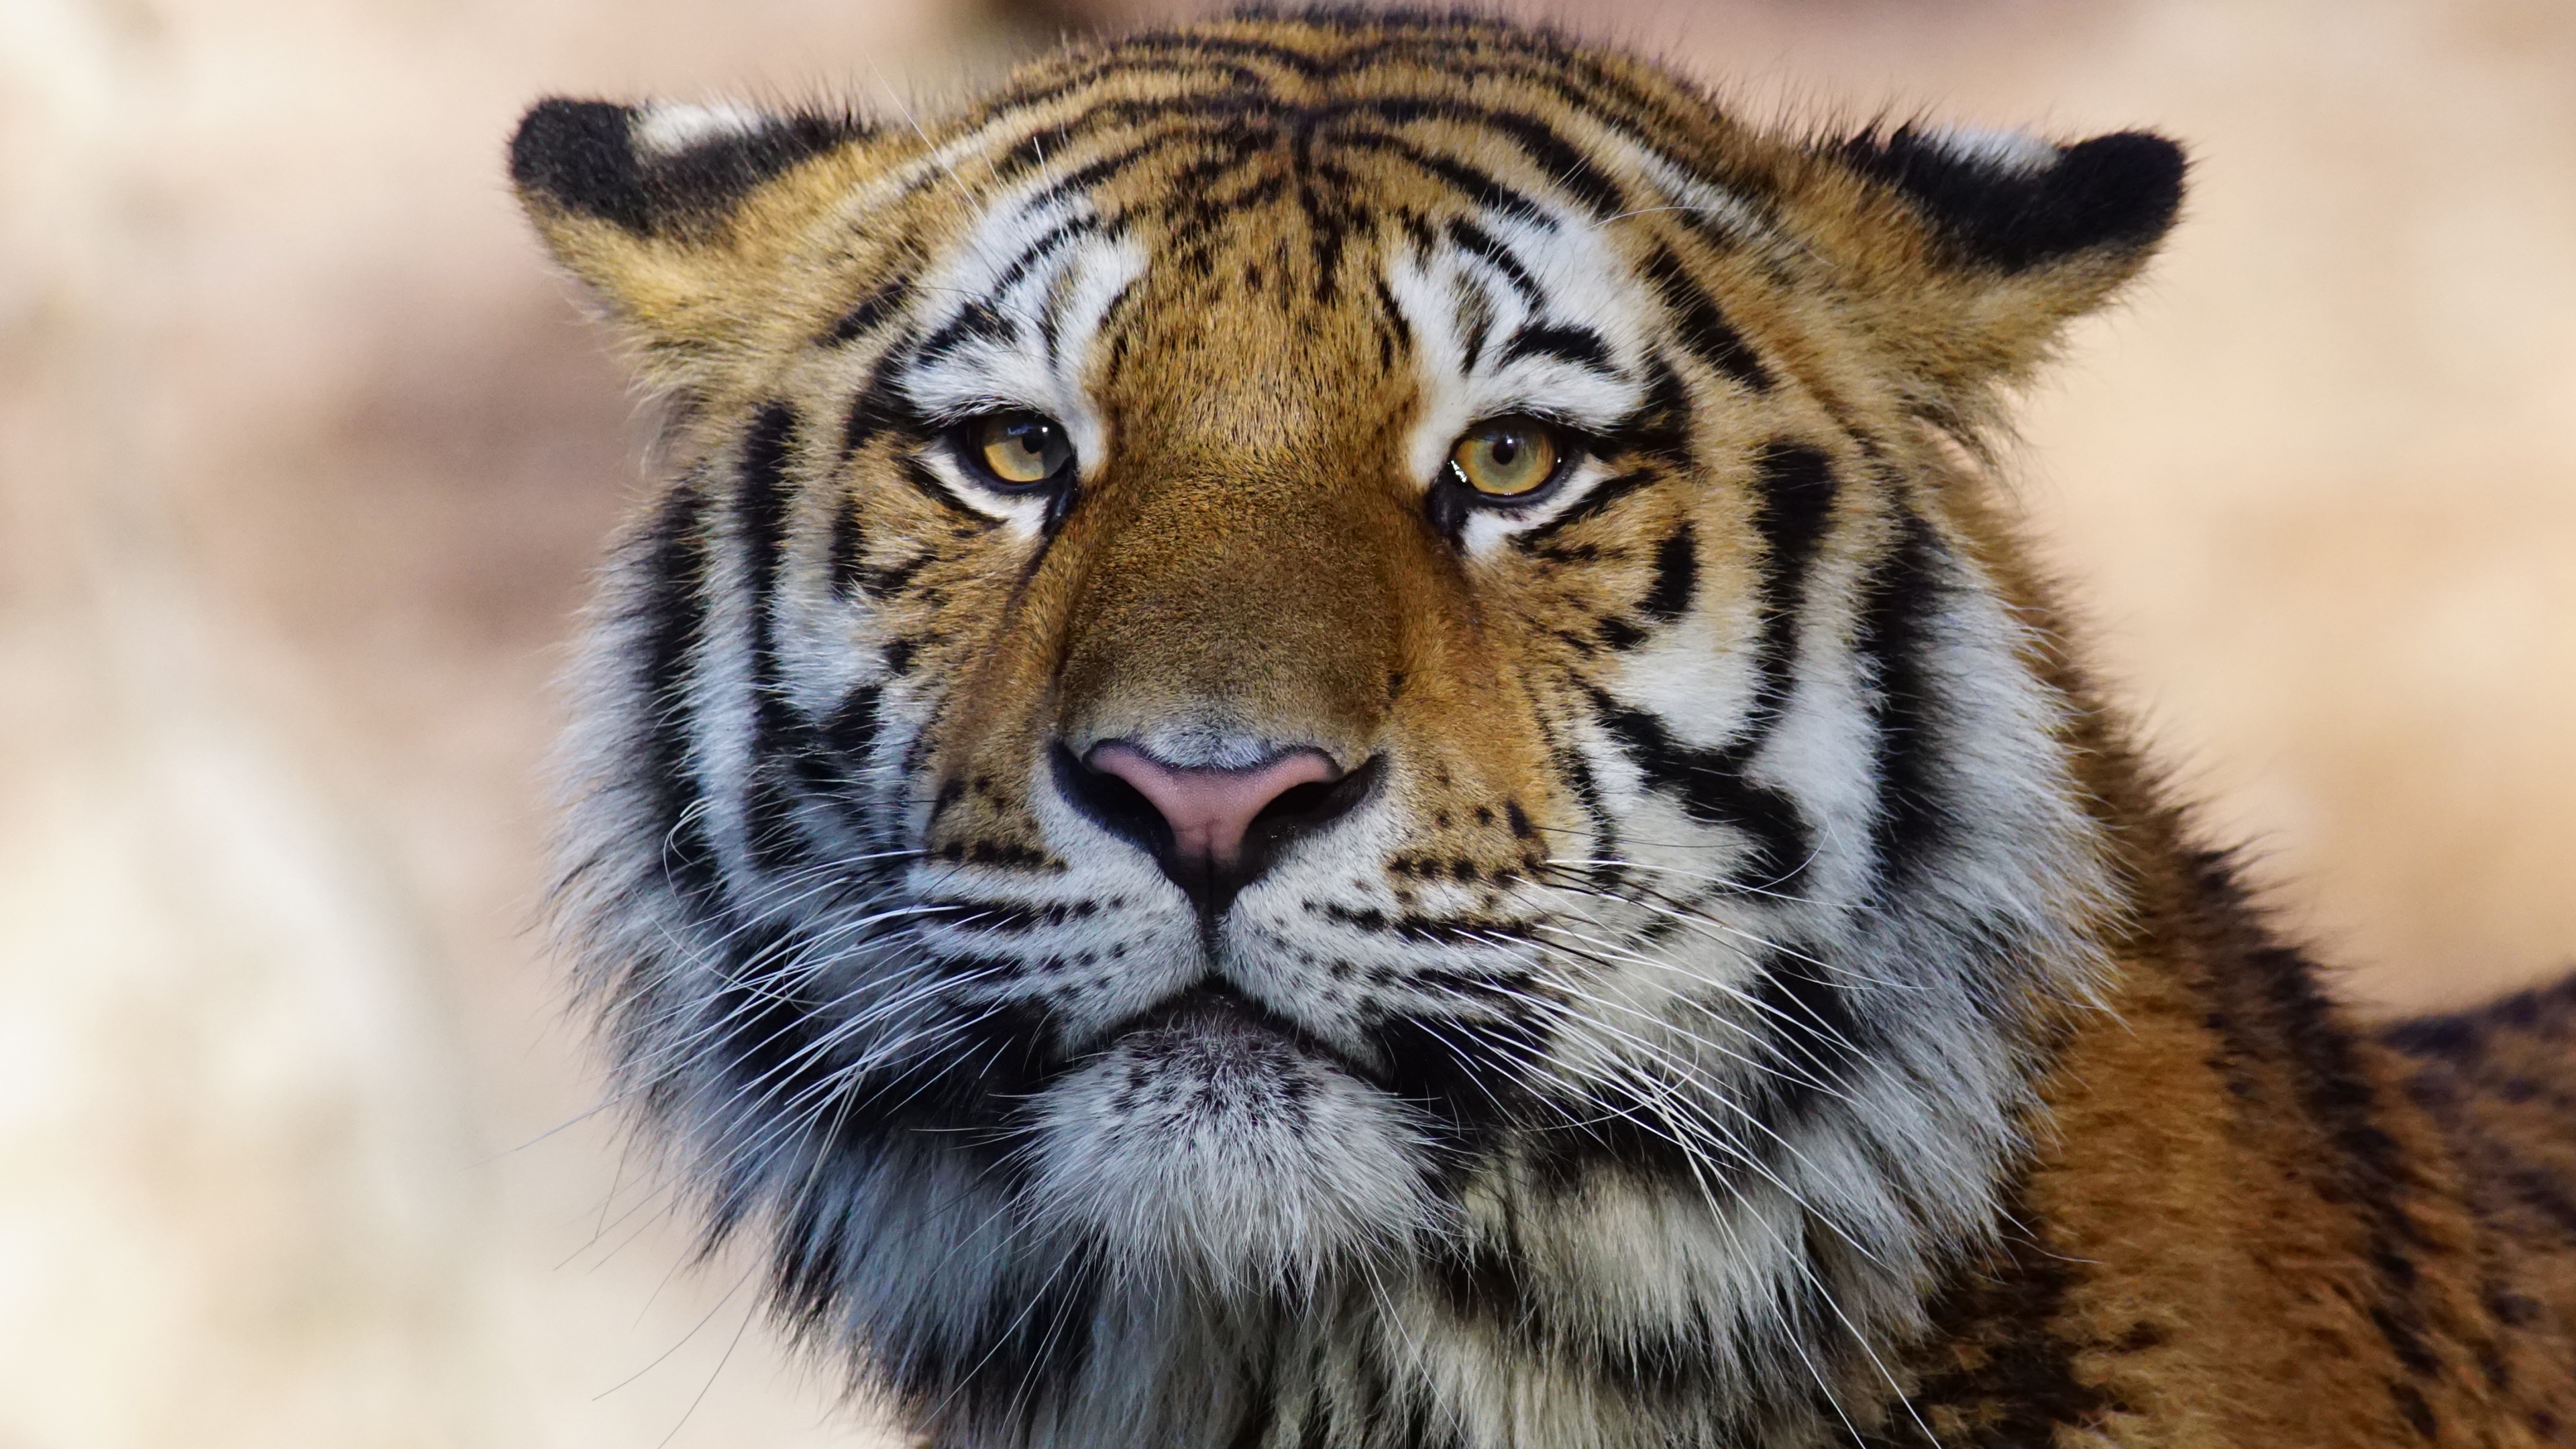 800X1280 Tiger Wild Animal 4K Nexus 7,Samsung Galaxy Tab 10,Note